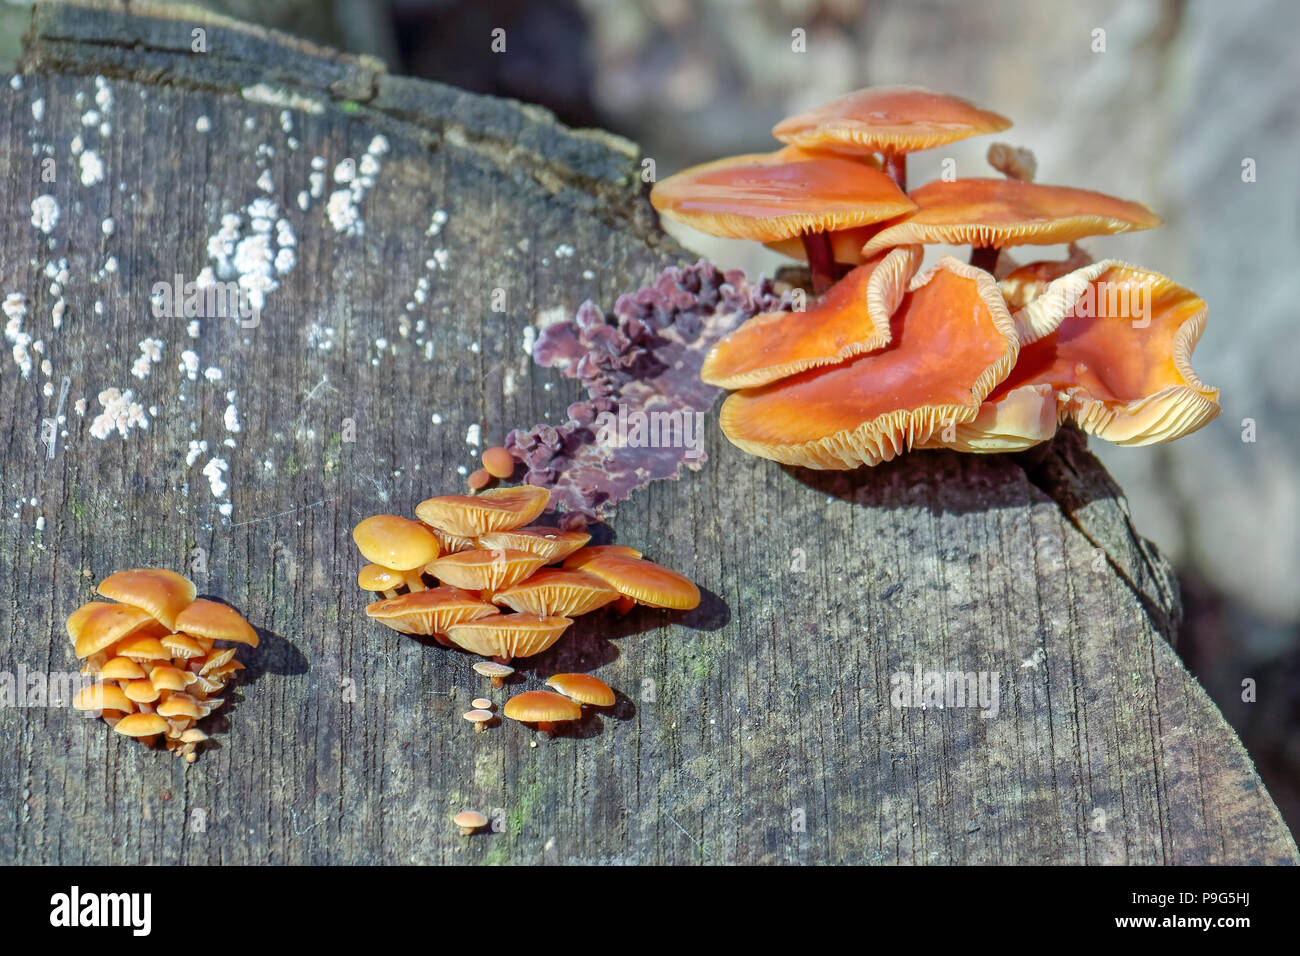 Velvet Shank Fungi (Flammulina velutipes) growing on an old tree stump Stock Photo